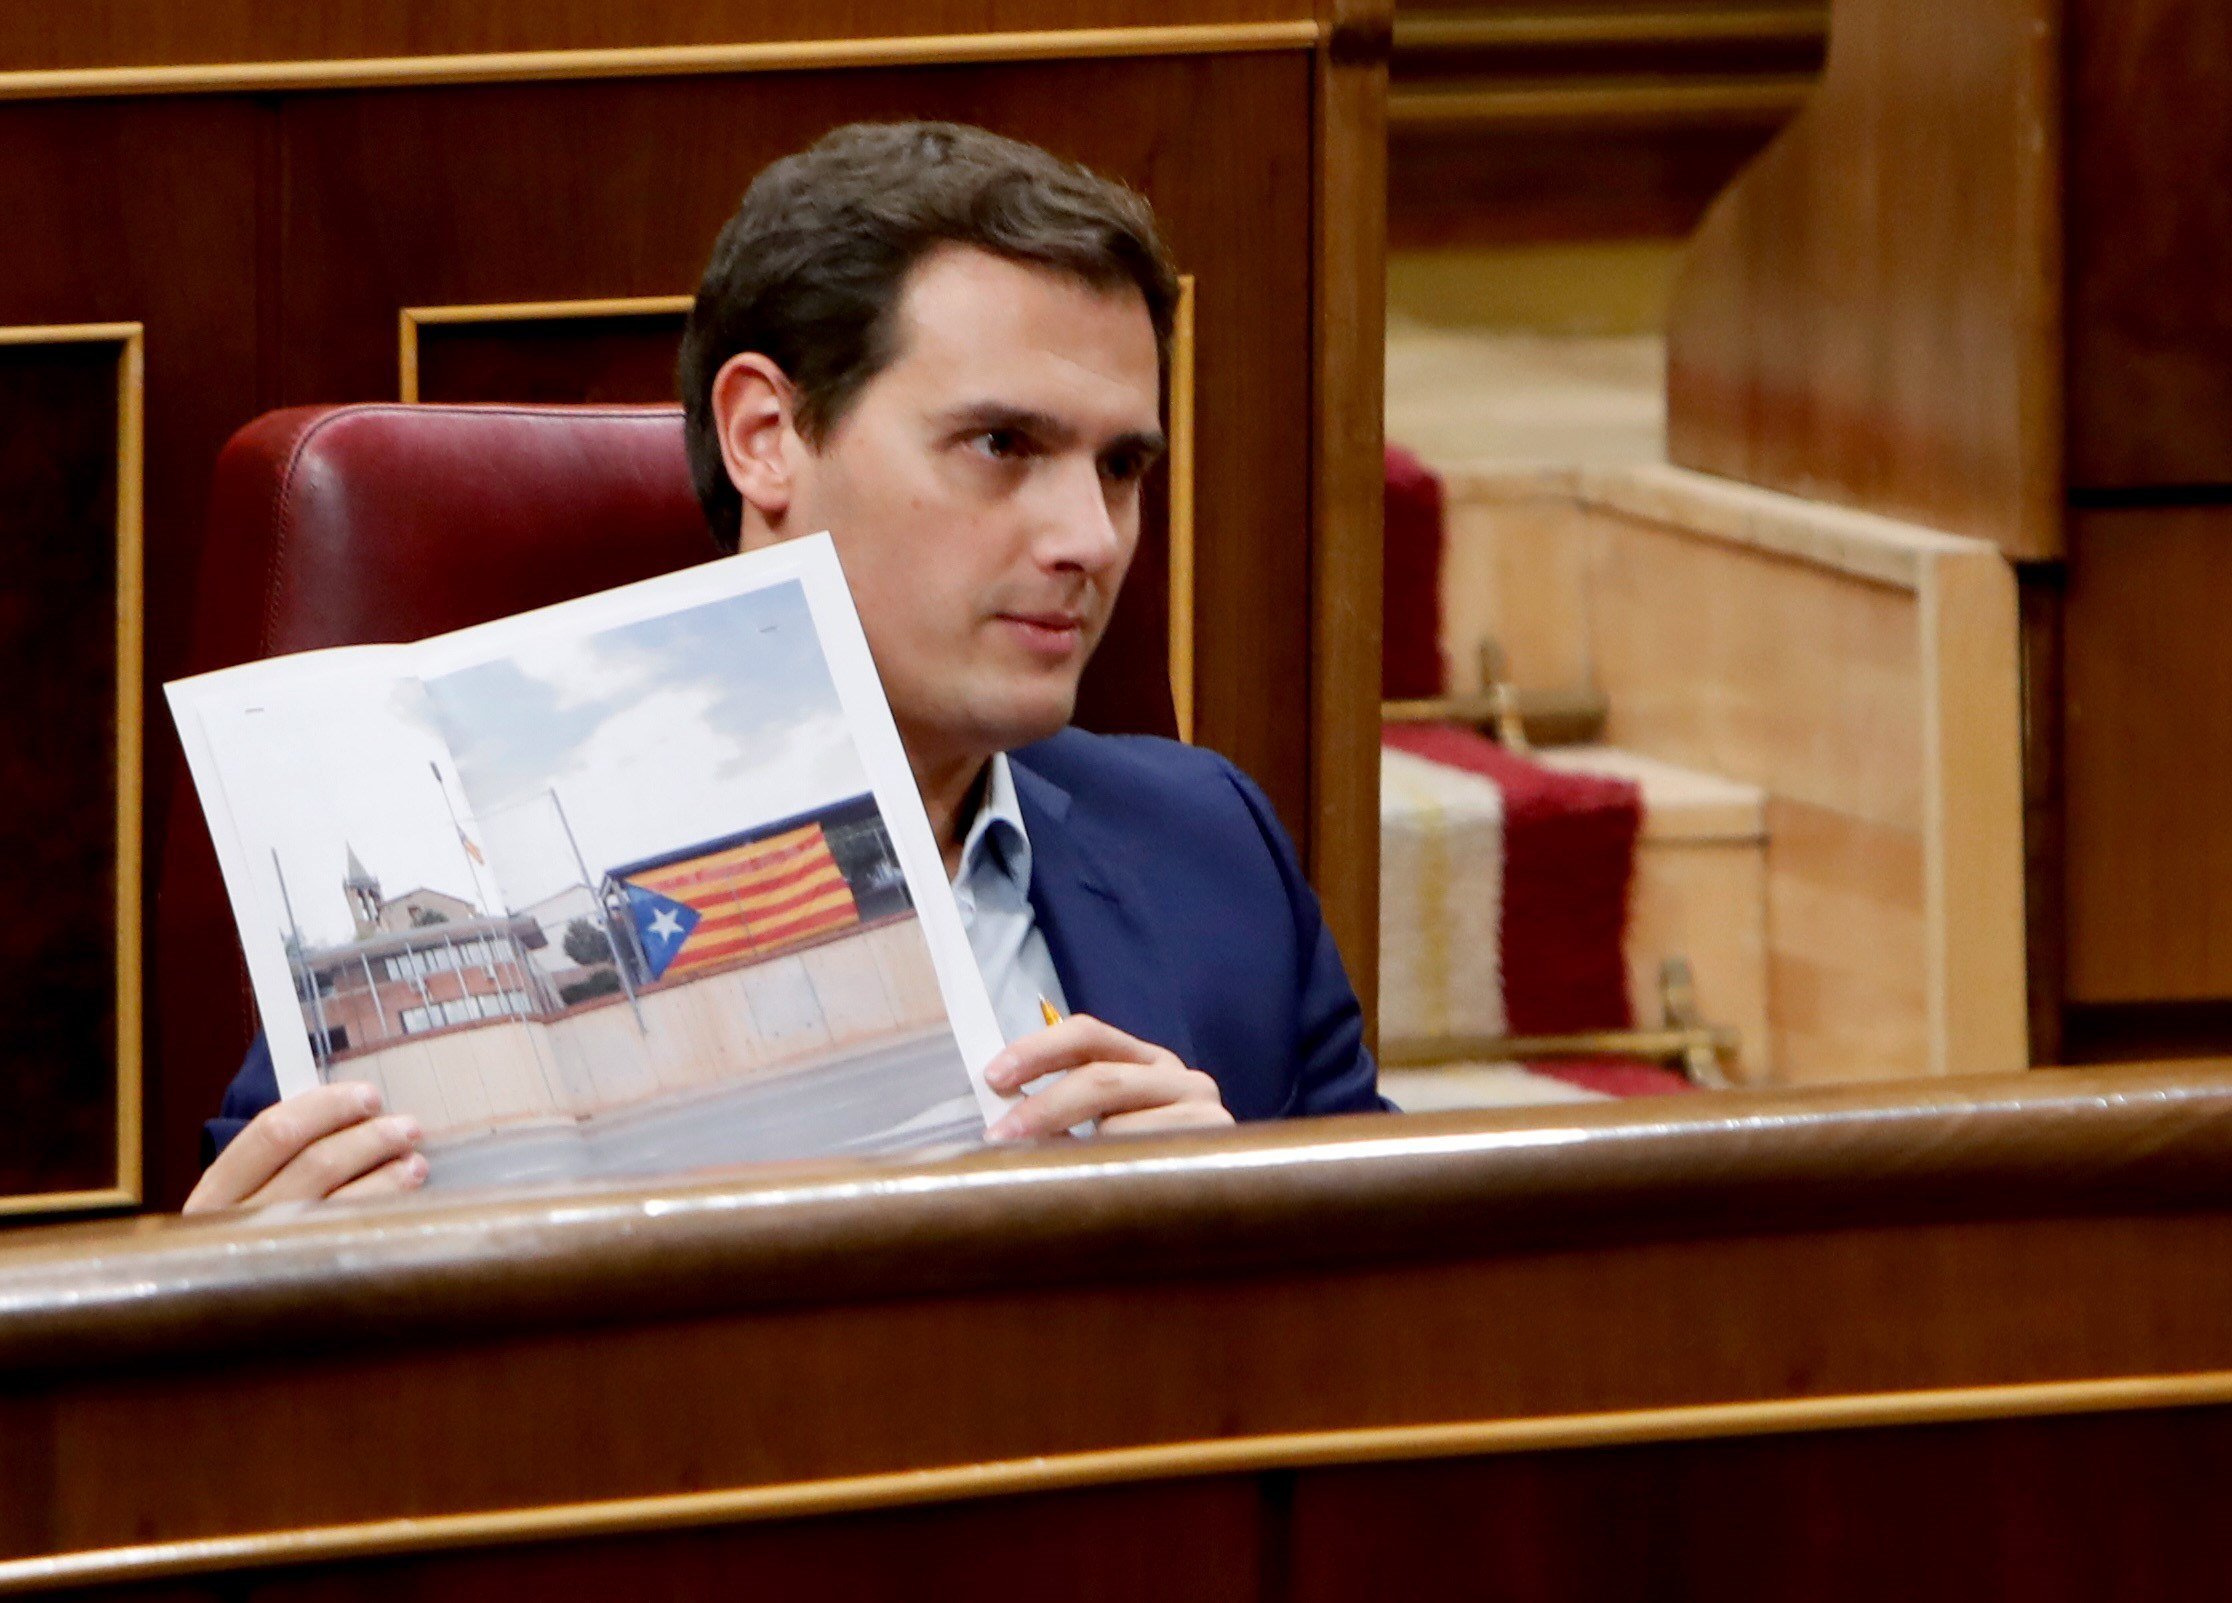 Rebolcada de Rivera al Congrés per la inspecció a l'escola catalana